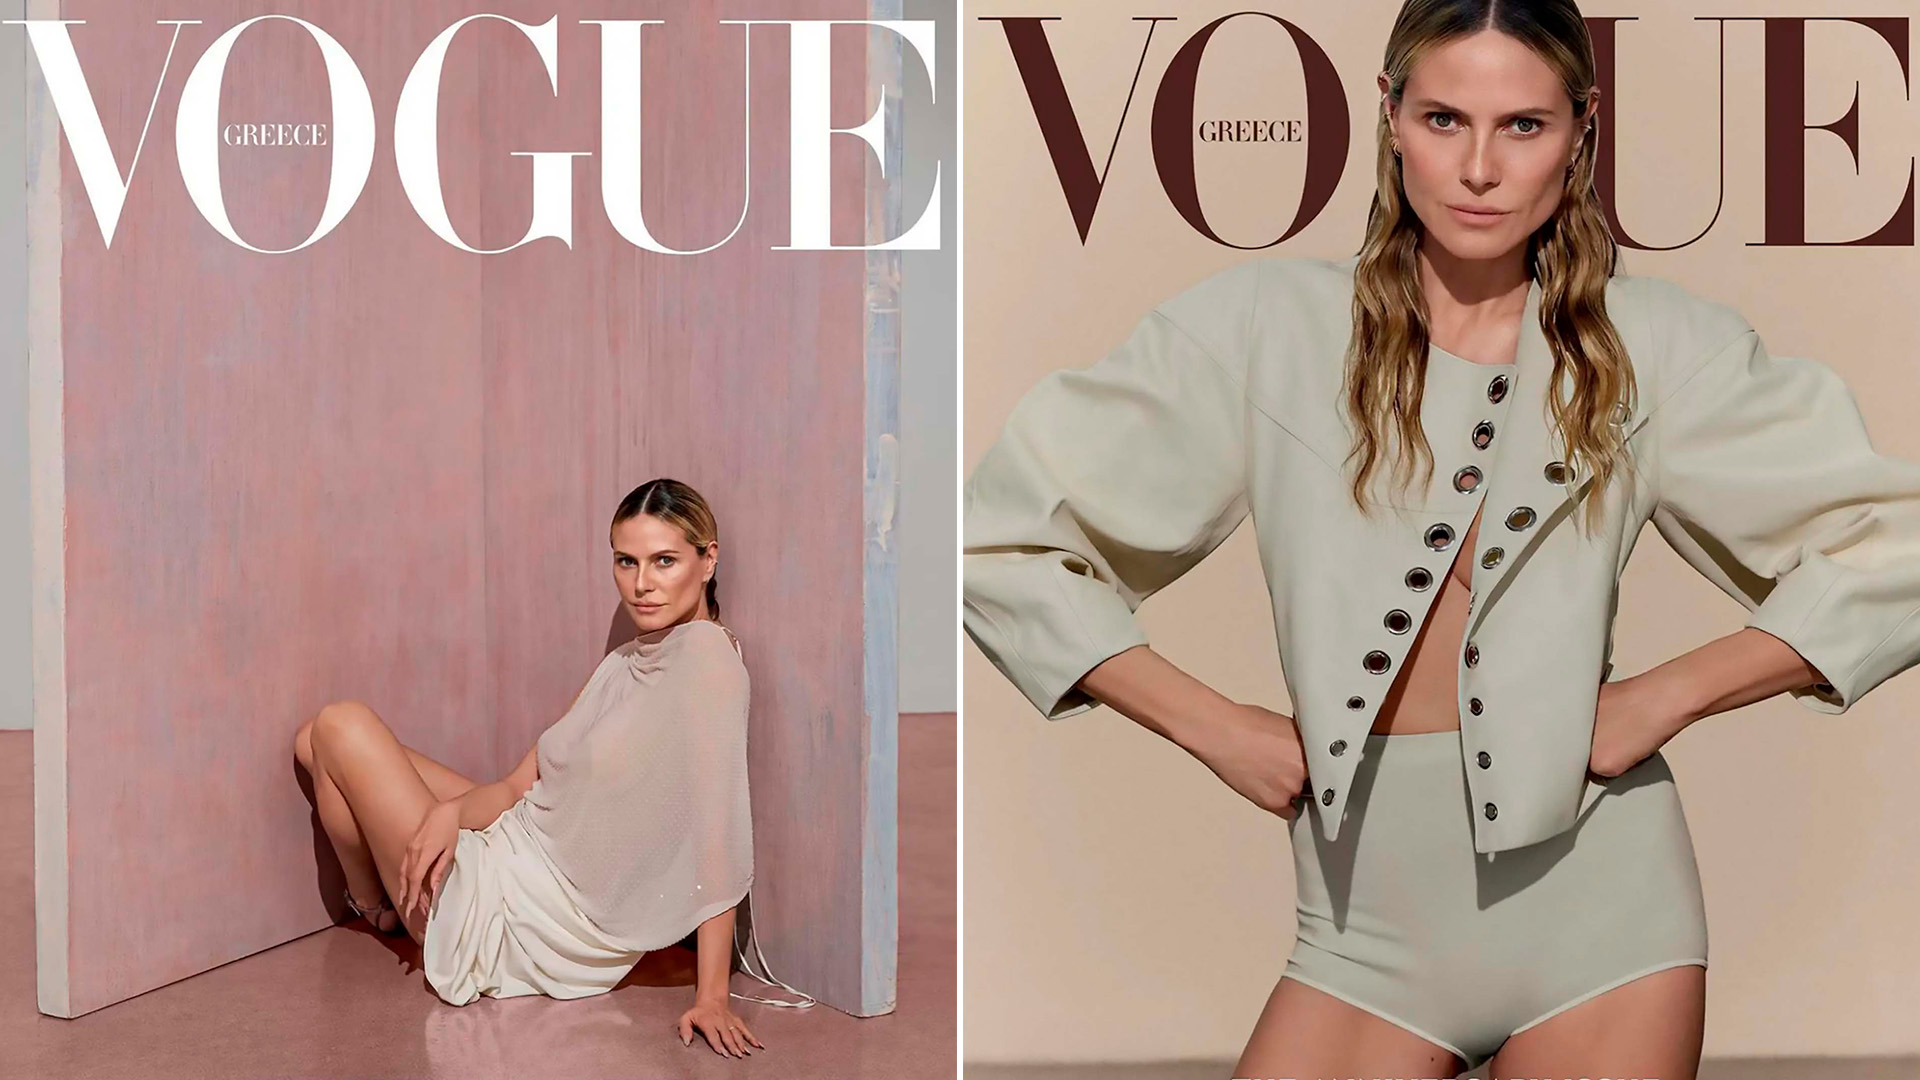 Heidi Klum posó para Vogue en una audaz producción de fotos a meses de cumplir 50 años